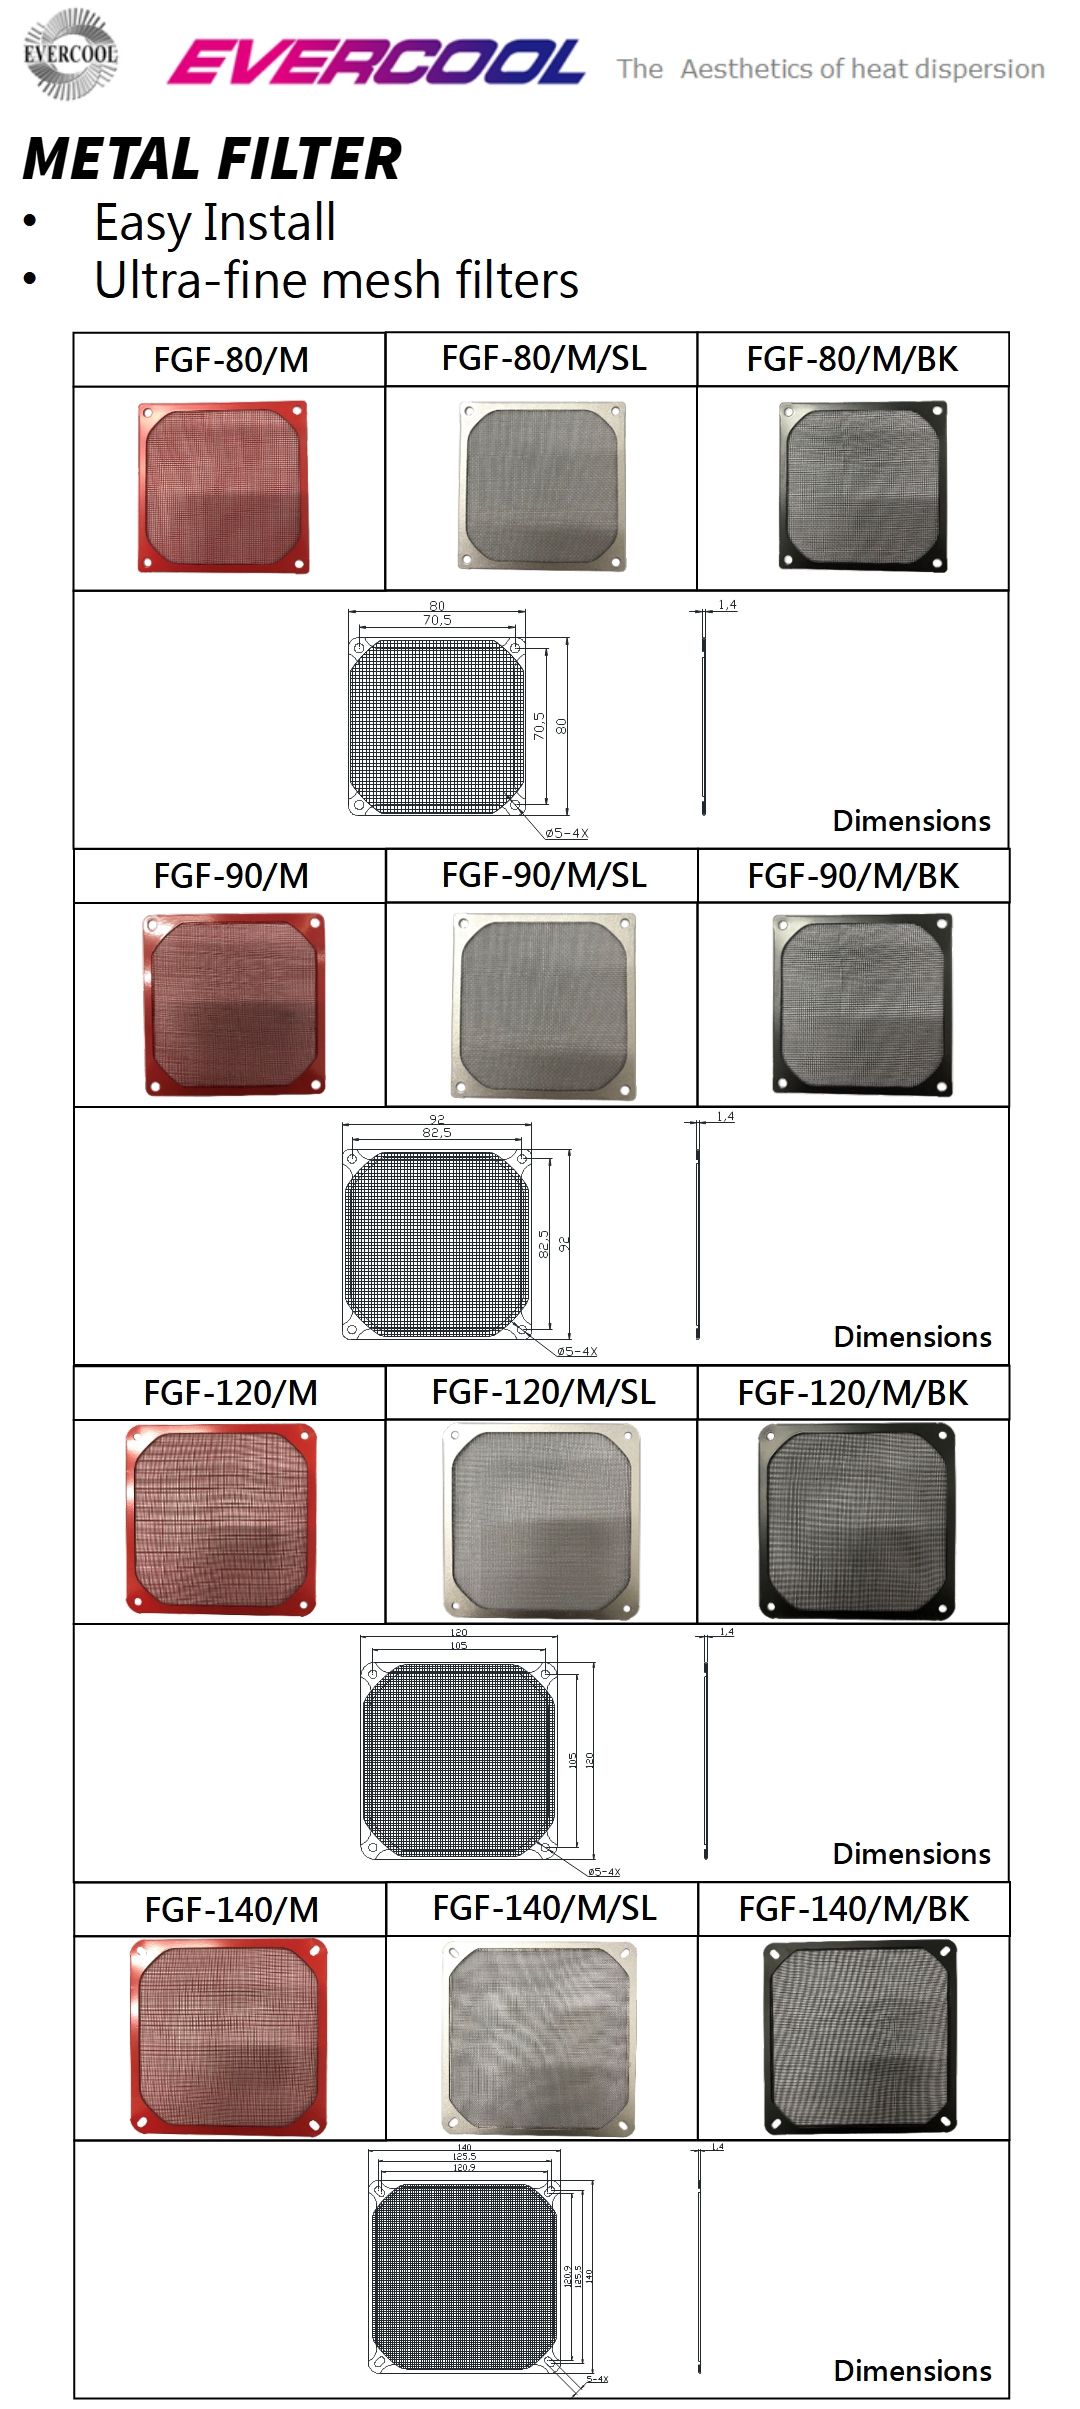 Especificación y diagrama de dimensiones de filtros metálicos a prueba de polvo